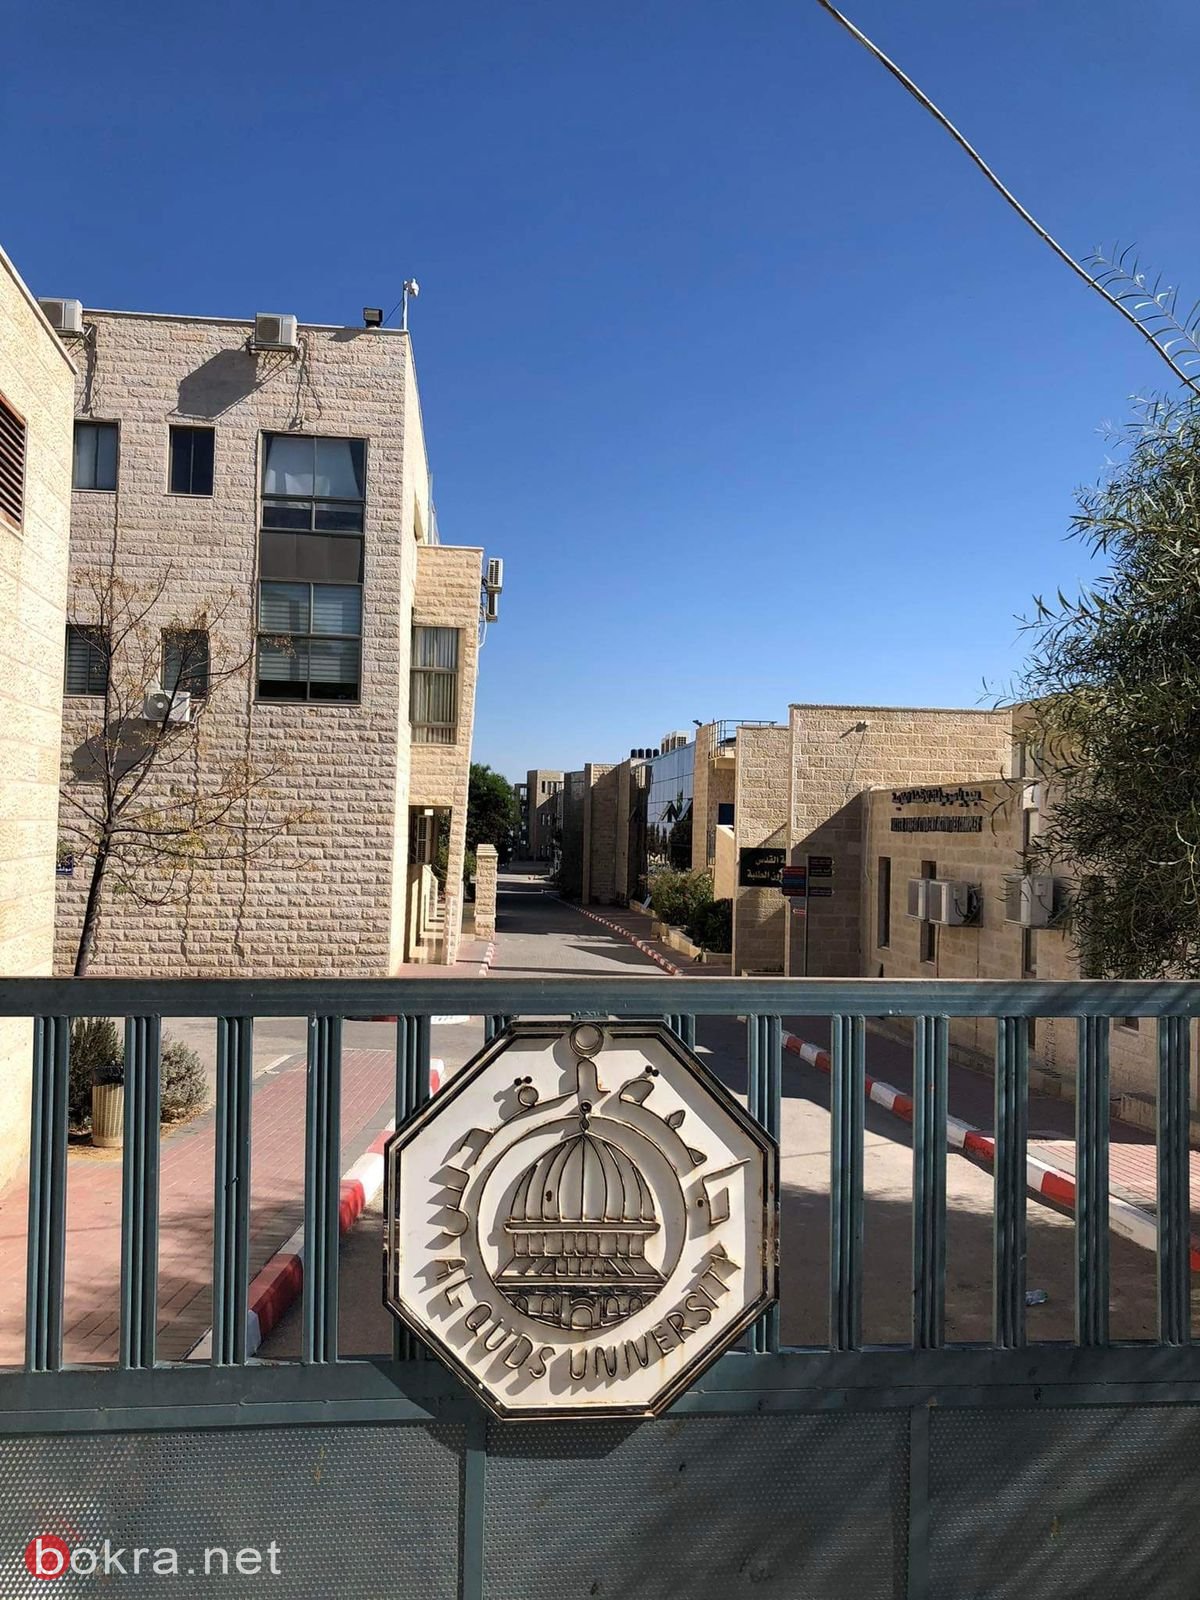 بالصور: جامعة القدس ابو ديس خاوية على عروشها-7